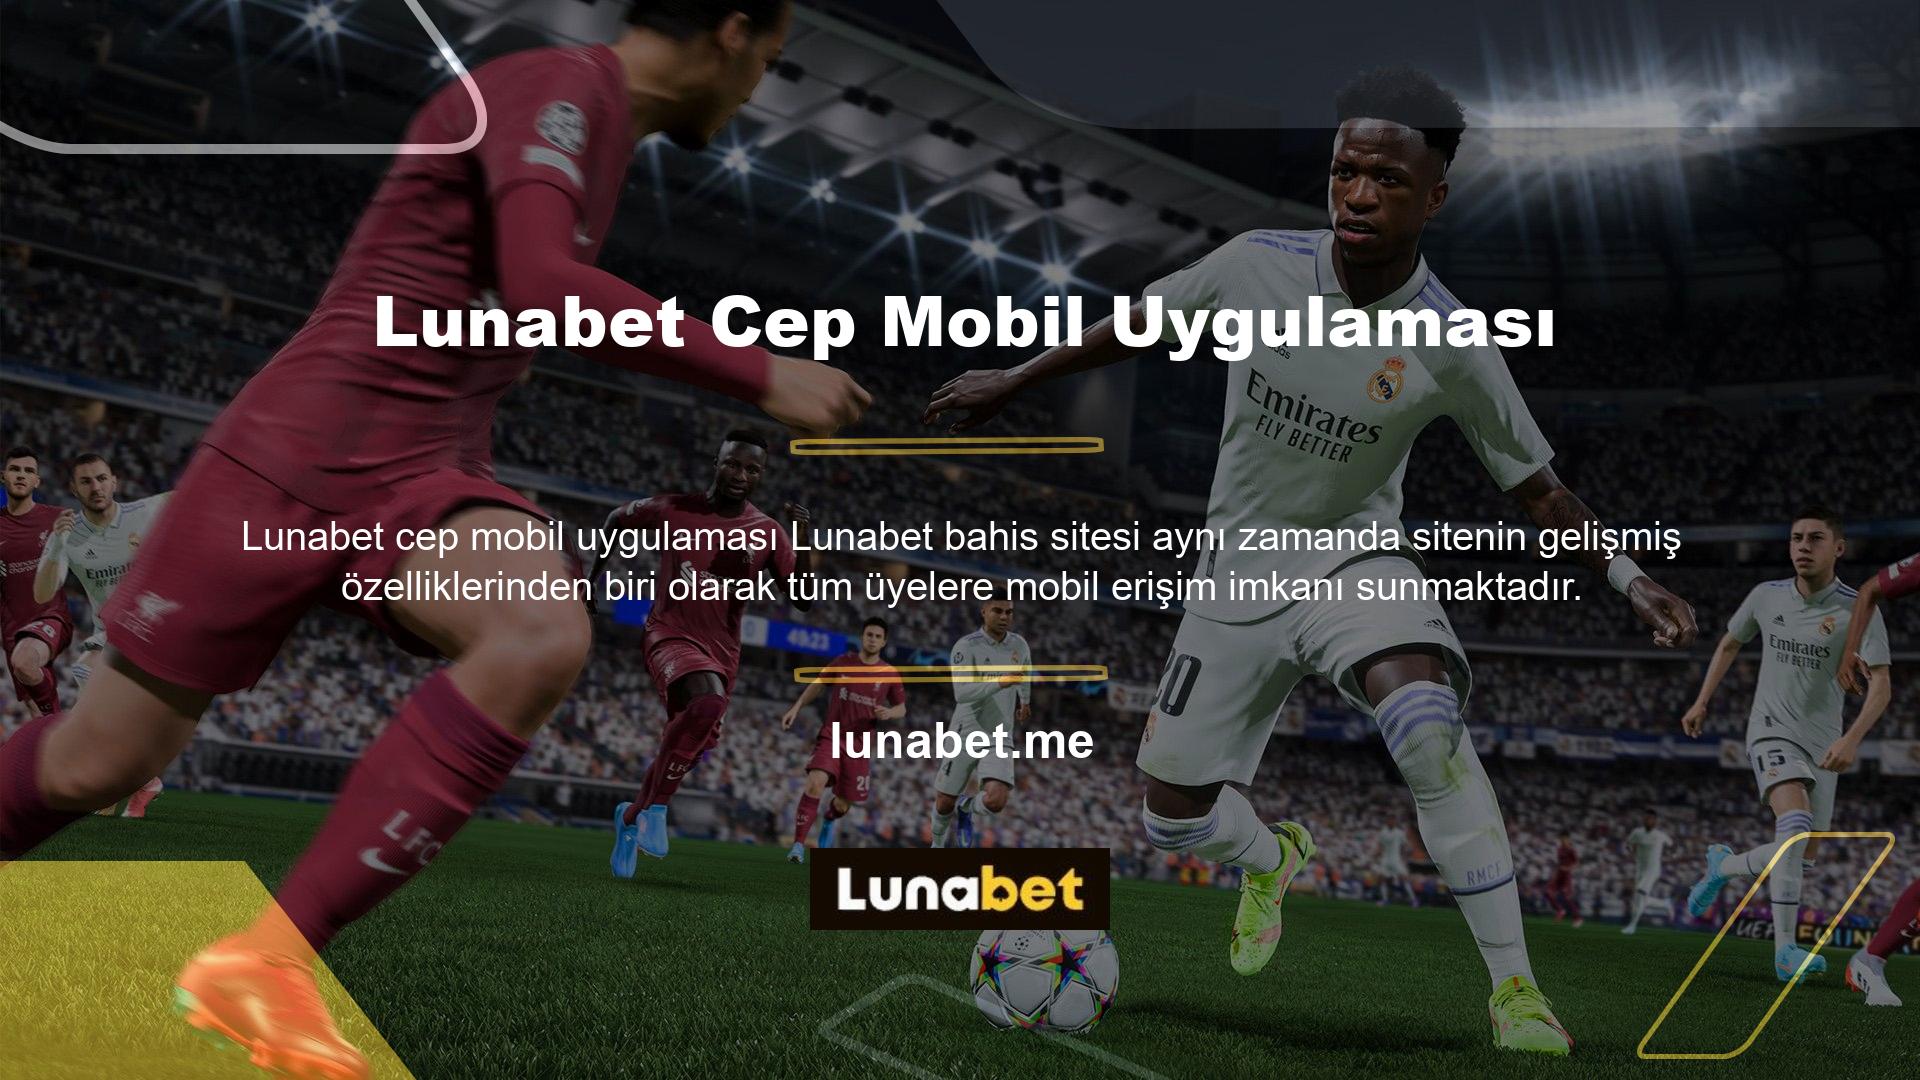 Üyeler Lunabet mobil uygulaması üzerinden istedikleri zaman tablet veya cep telefonlarından siteye giriş yapabilir ve oyun oynayabilirler